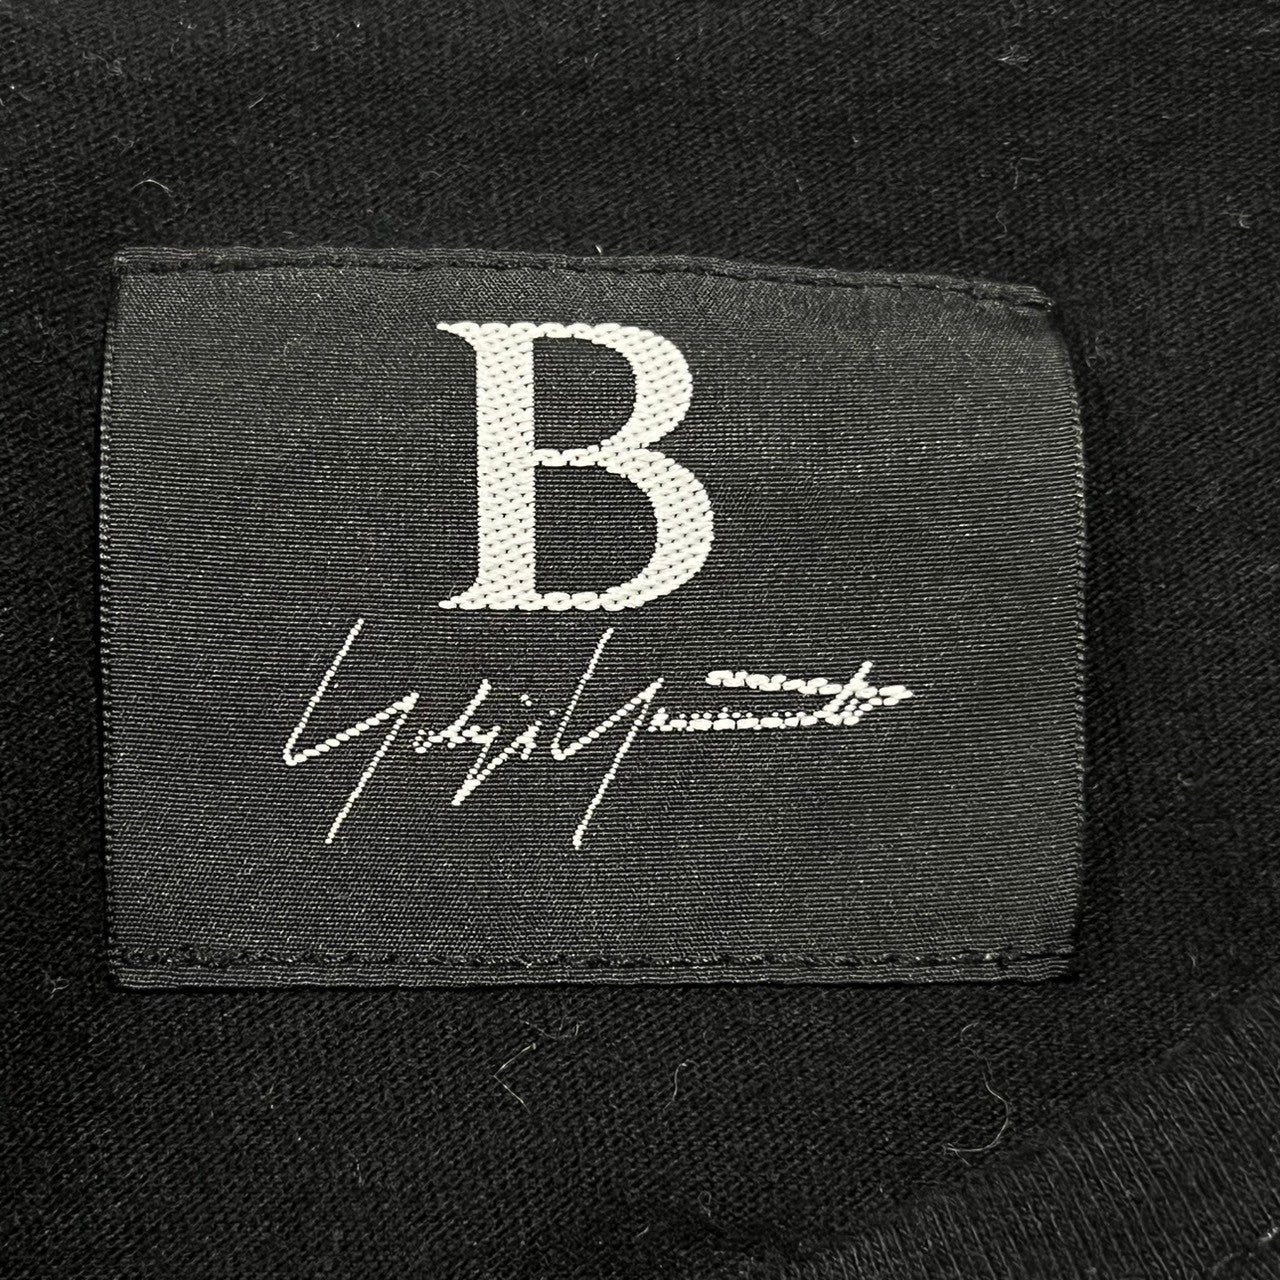 B Yohji Yamamoto(ビー ヨウジヤマモト) "Y" finger  embroidered Ｔ shirt 刺繍 Ｔシャツ カットソー 半袖 指 NW-T46-068 2(S程度) ブラック